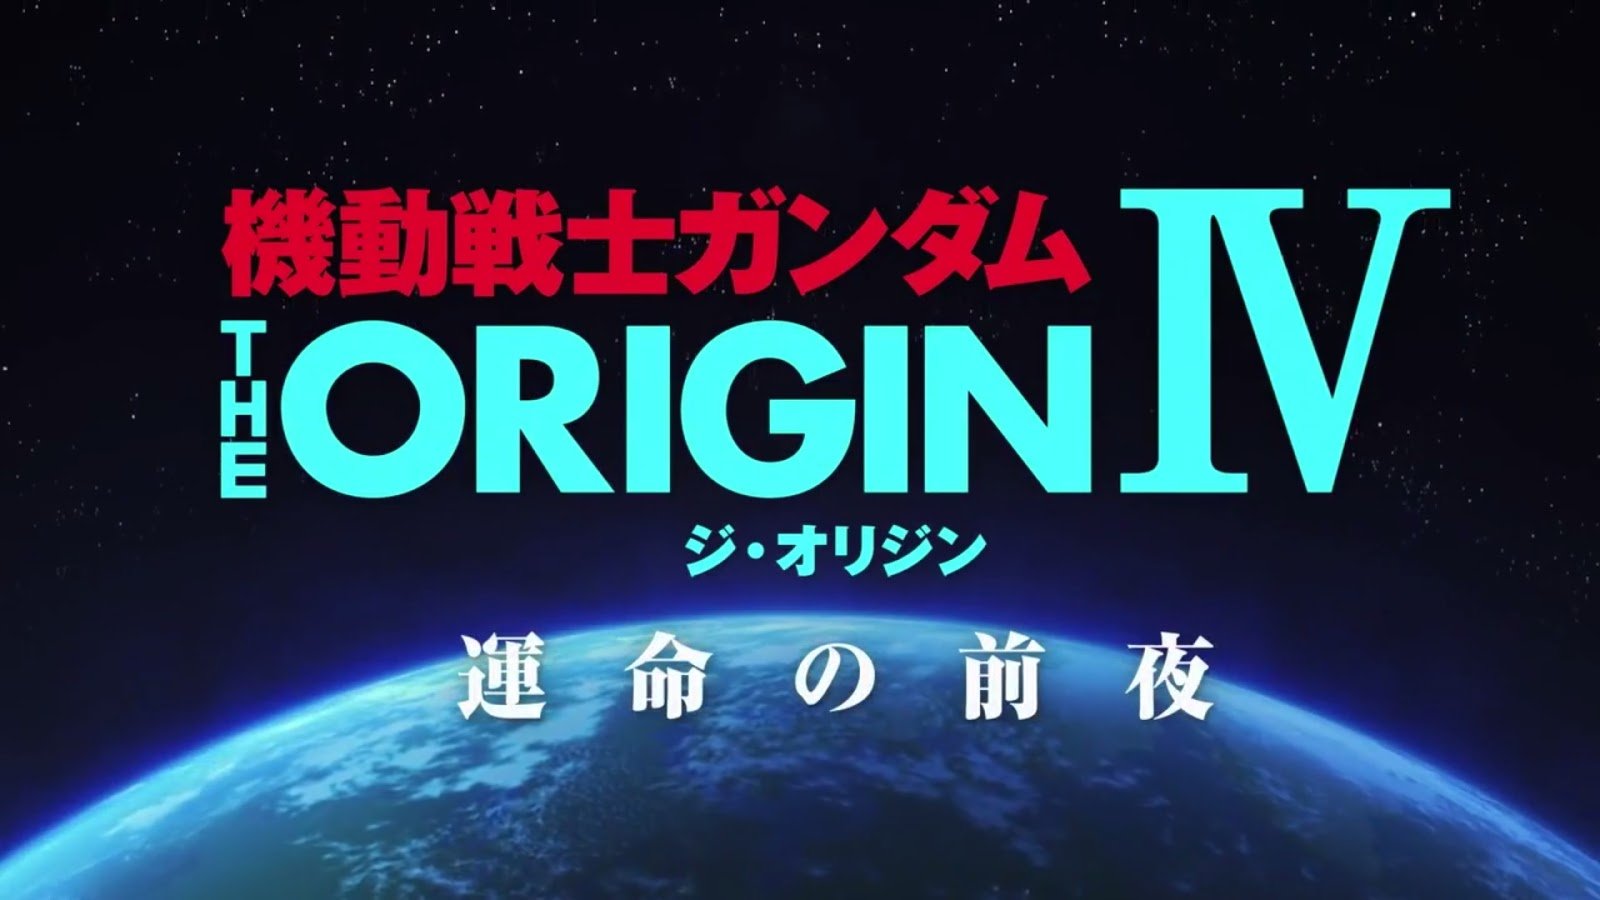 Mobile Suit Gundam the Origin IV